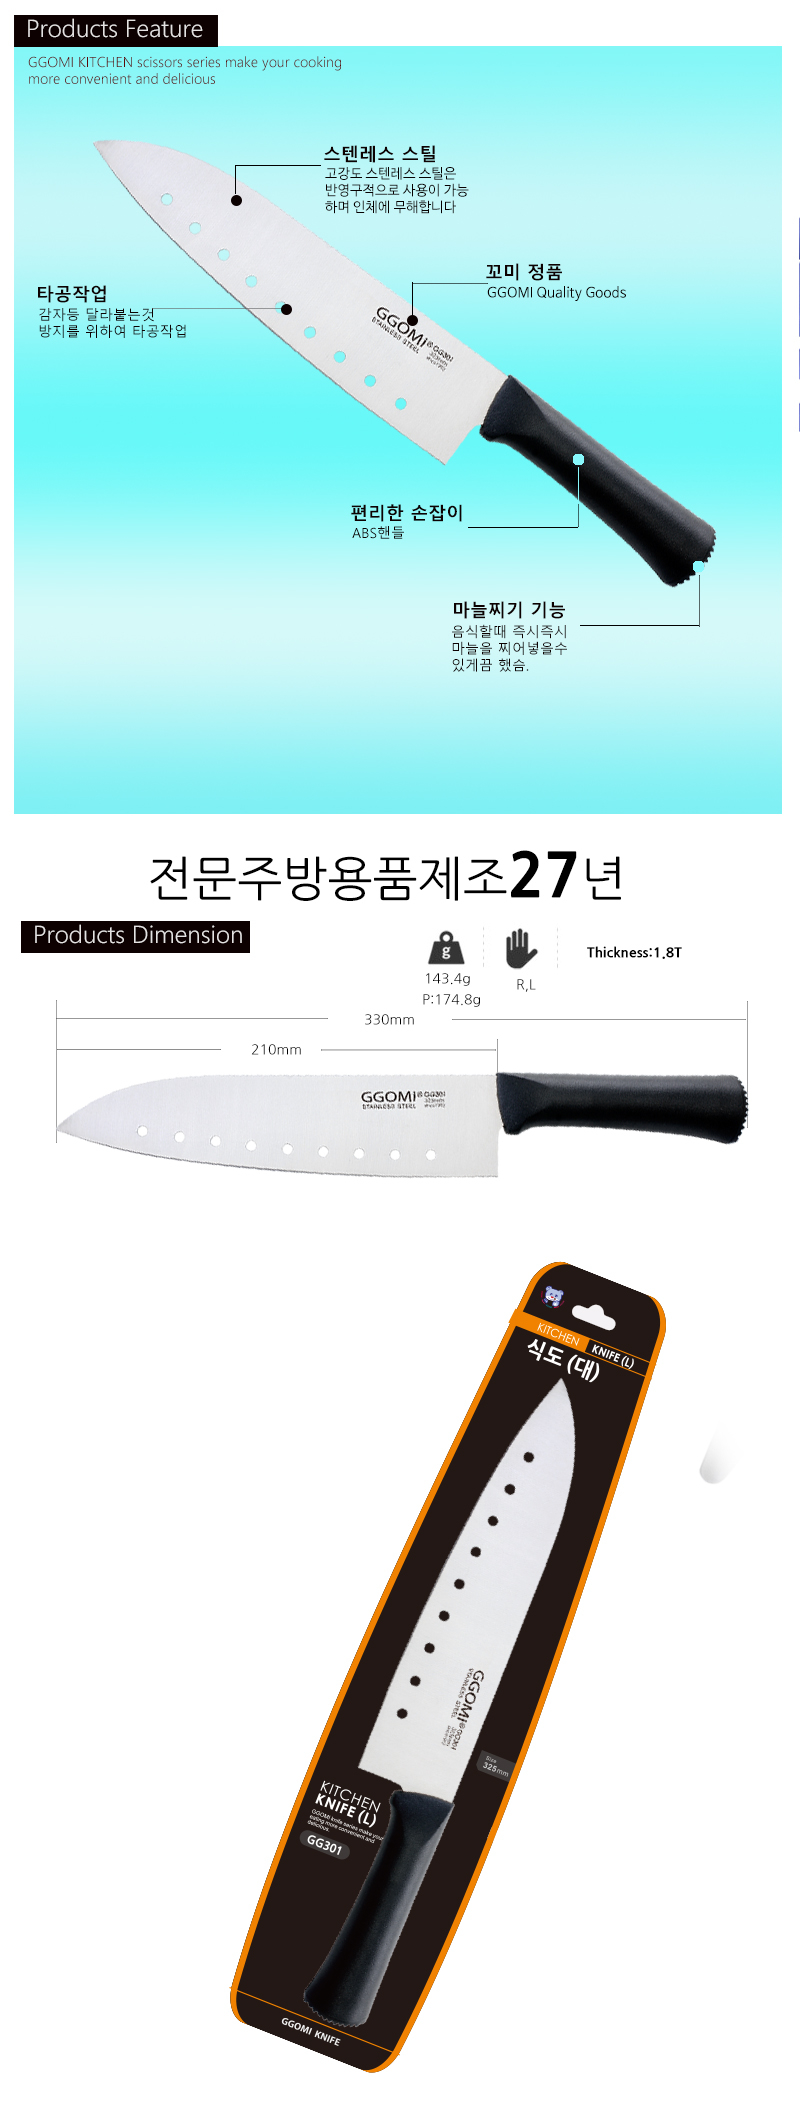 [GGOMi KOREA] Dao nhà bếp Hàn Quốc - GG 301